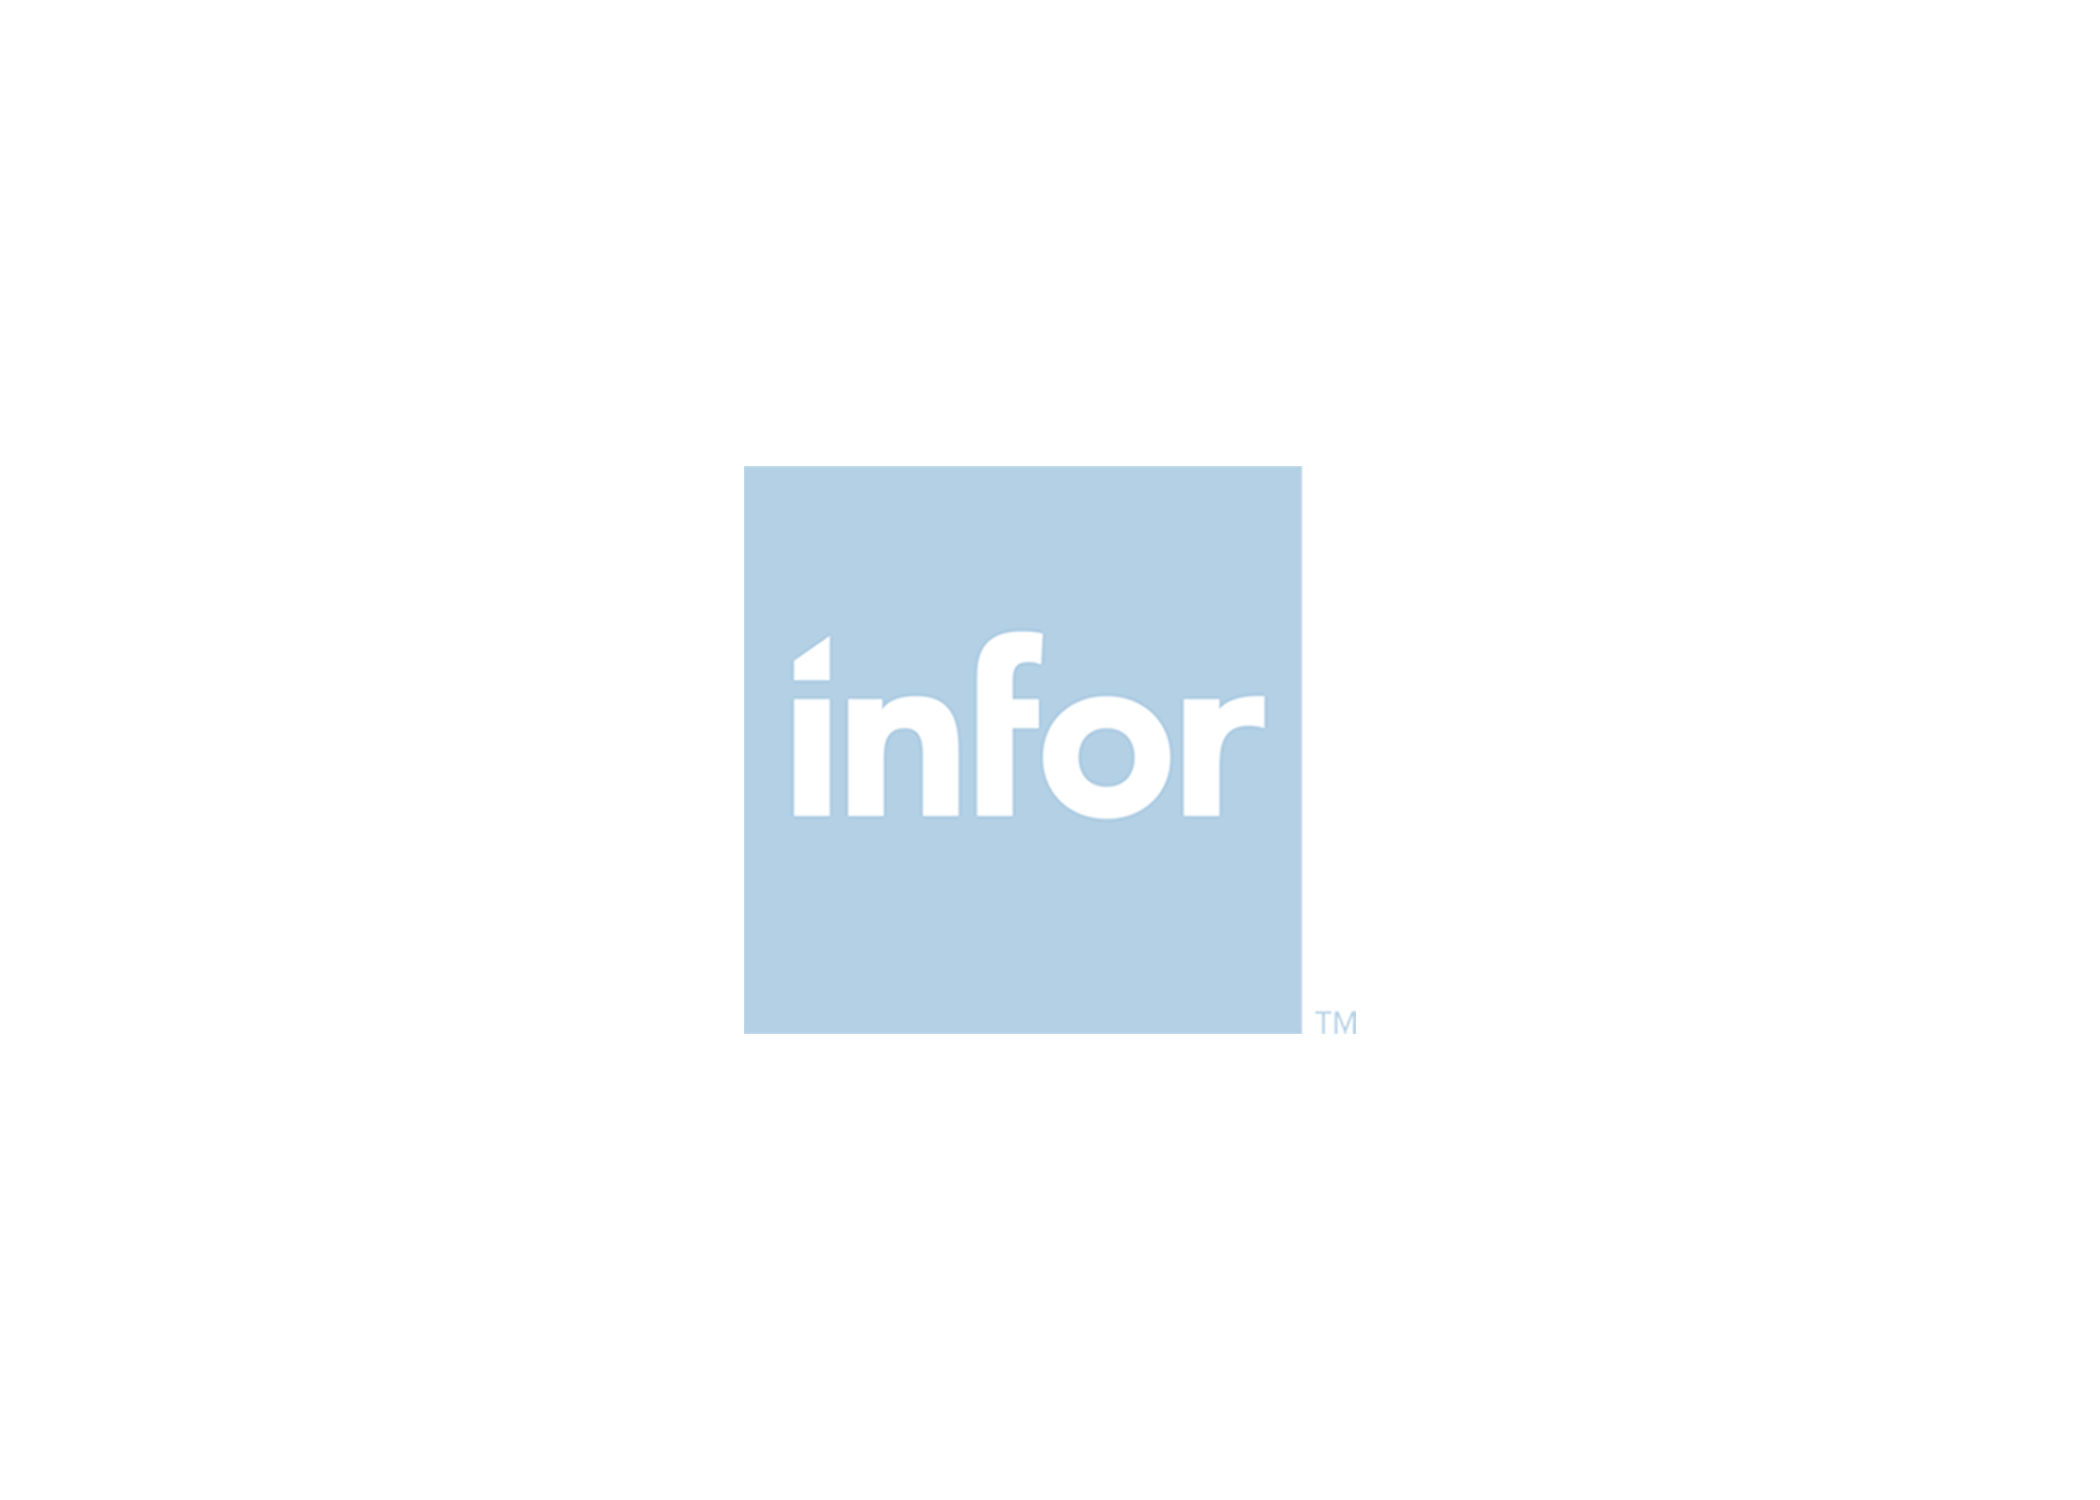 Infor-logo